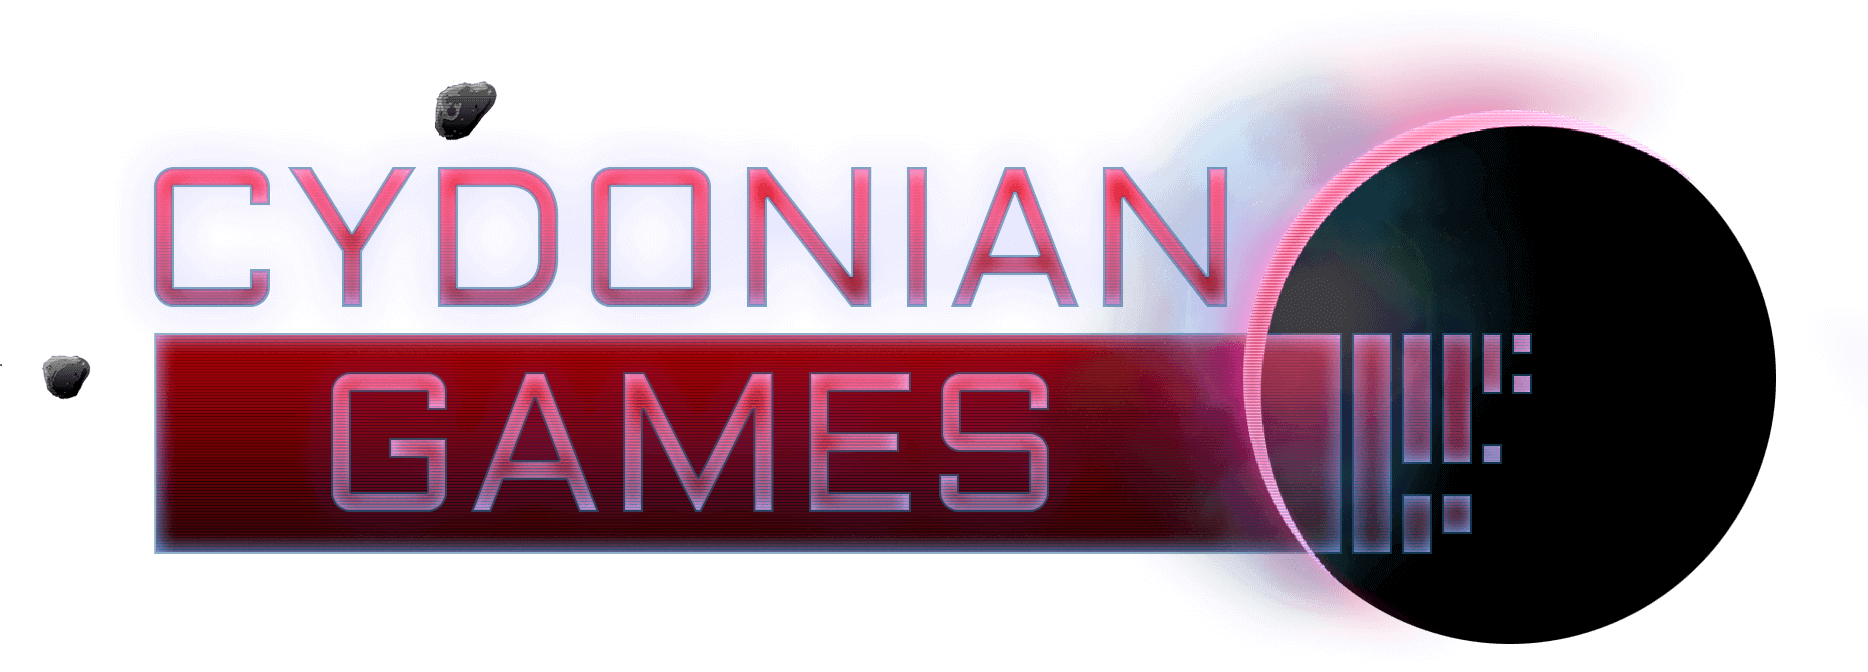 Cydonian Games